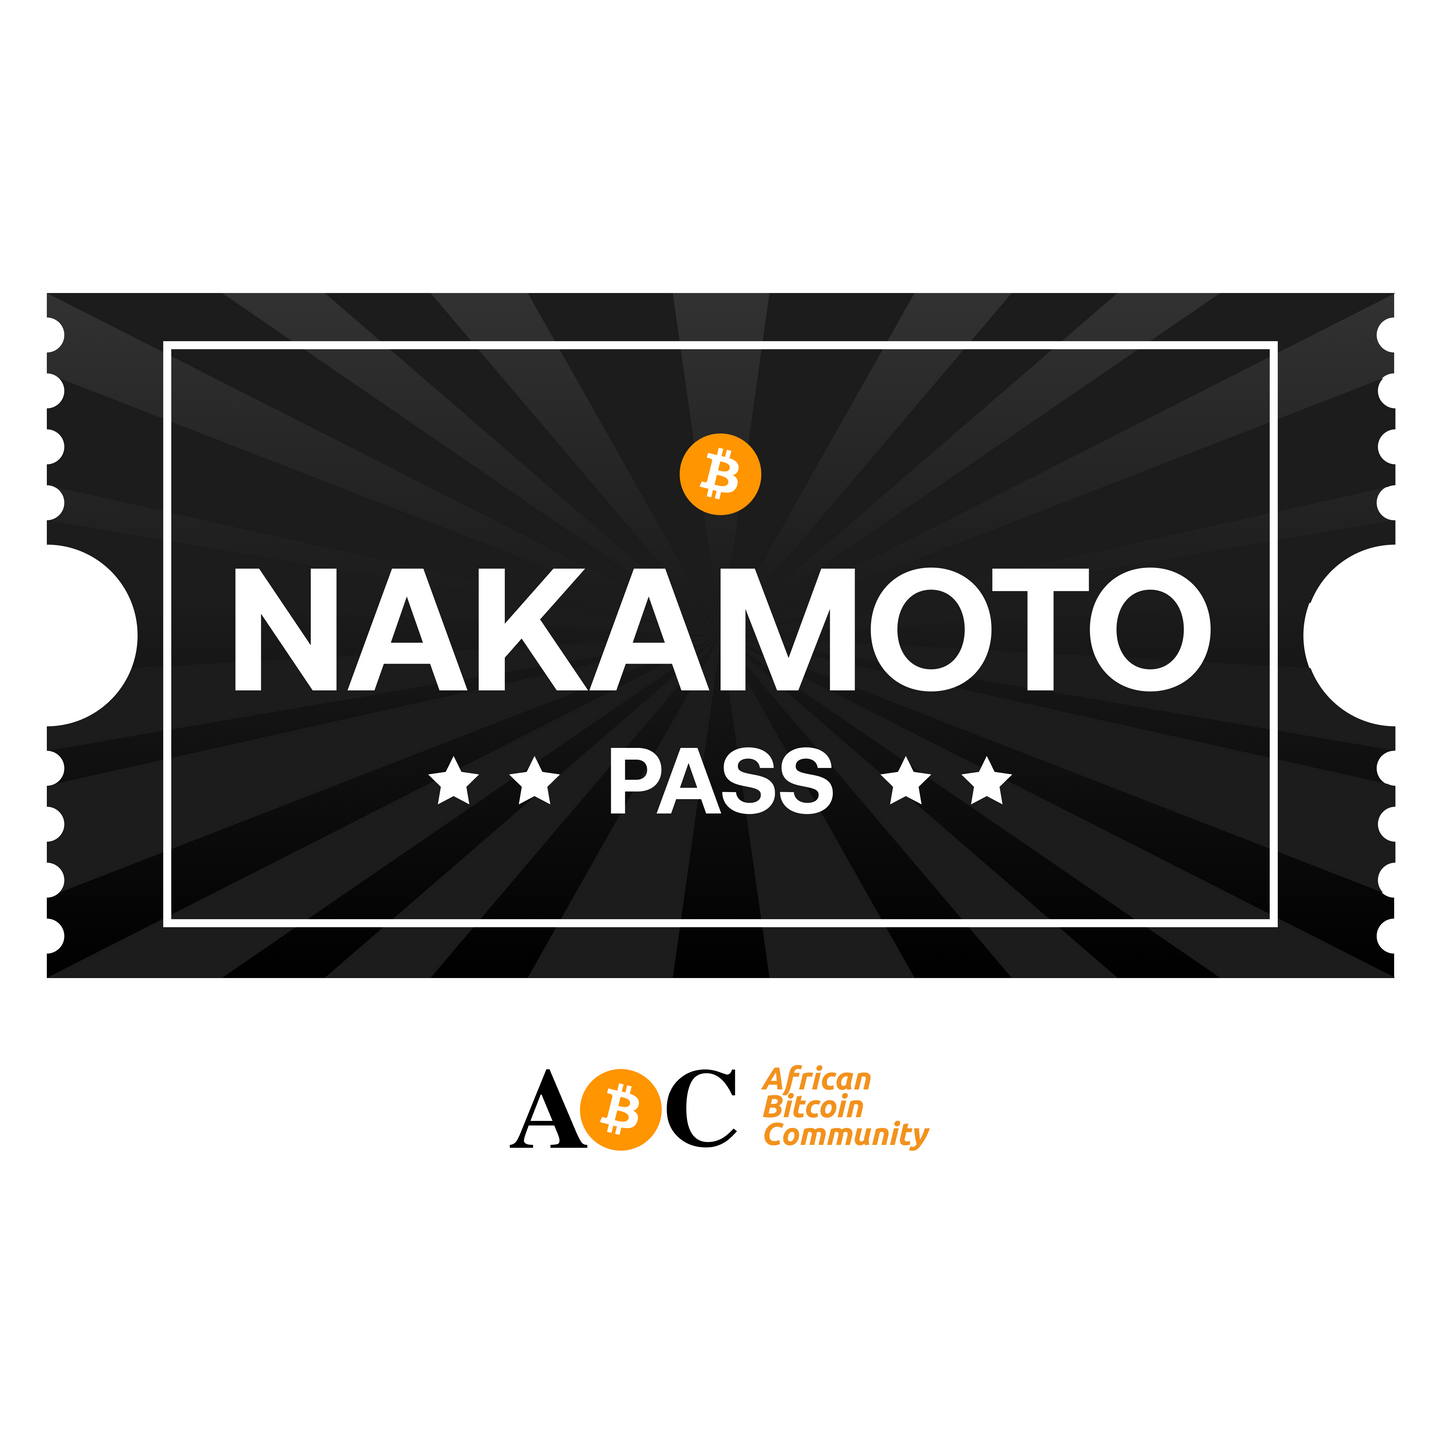 NAKAMOTO PASS